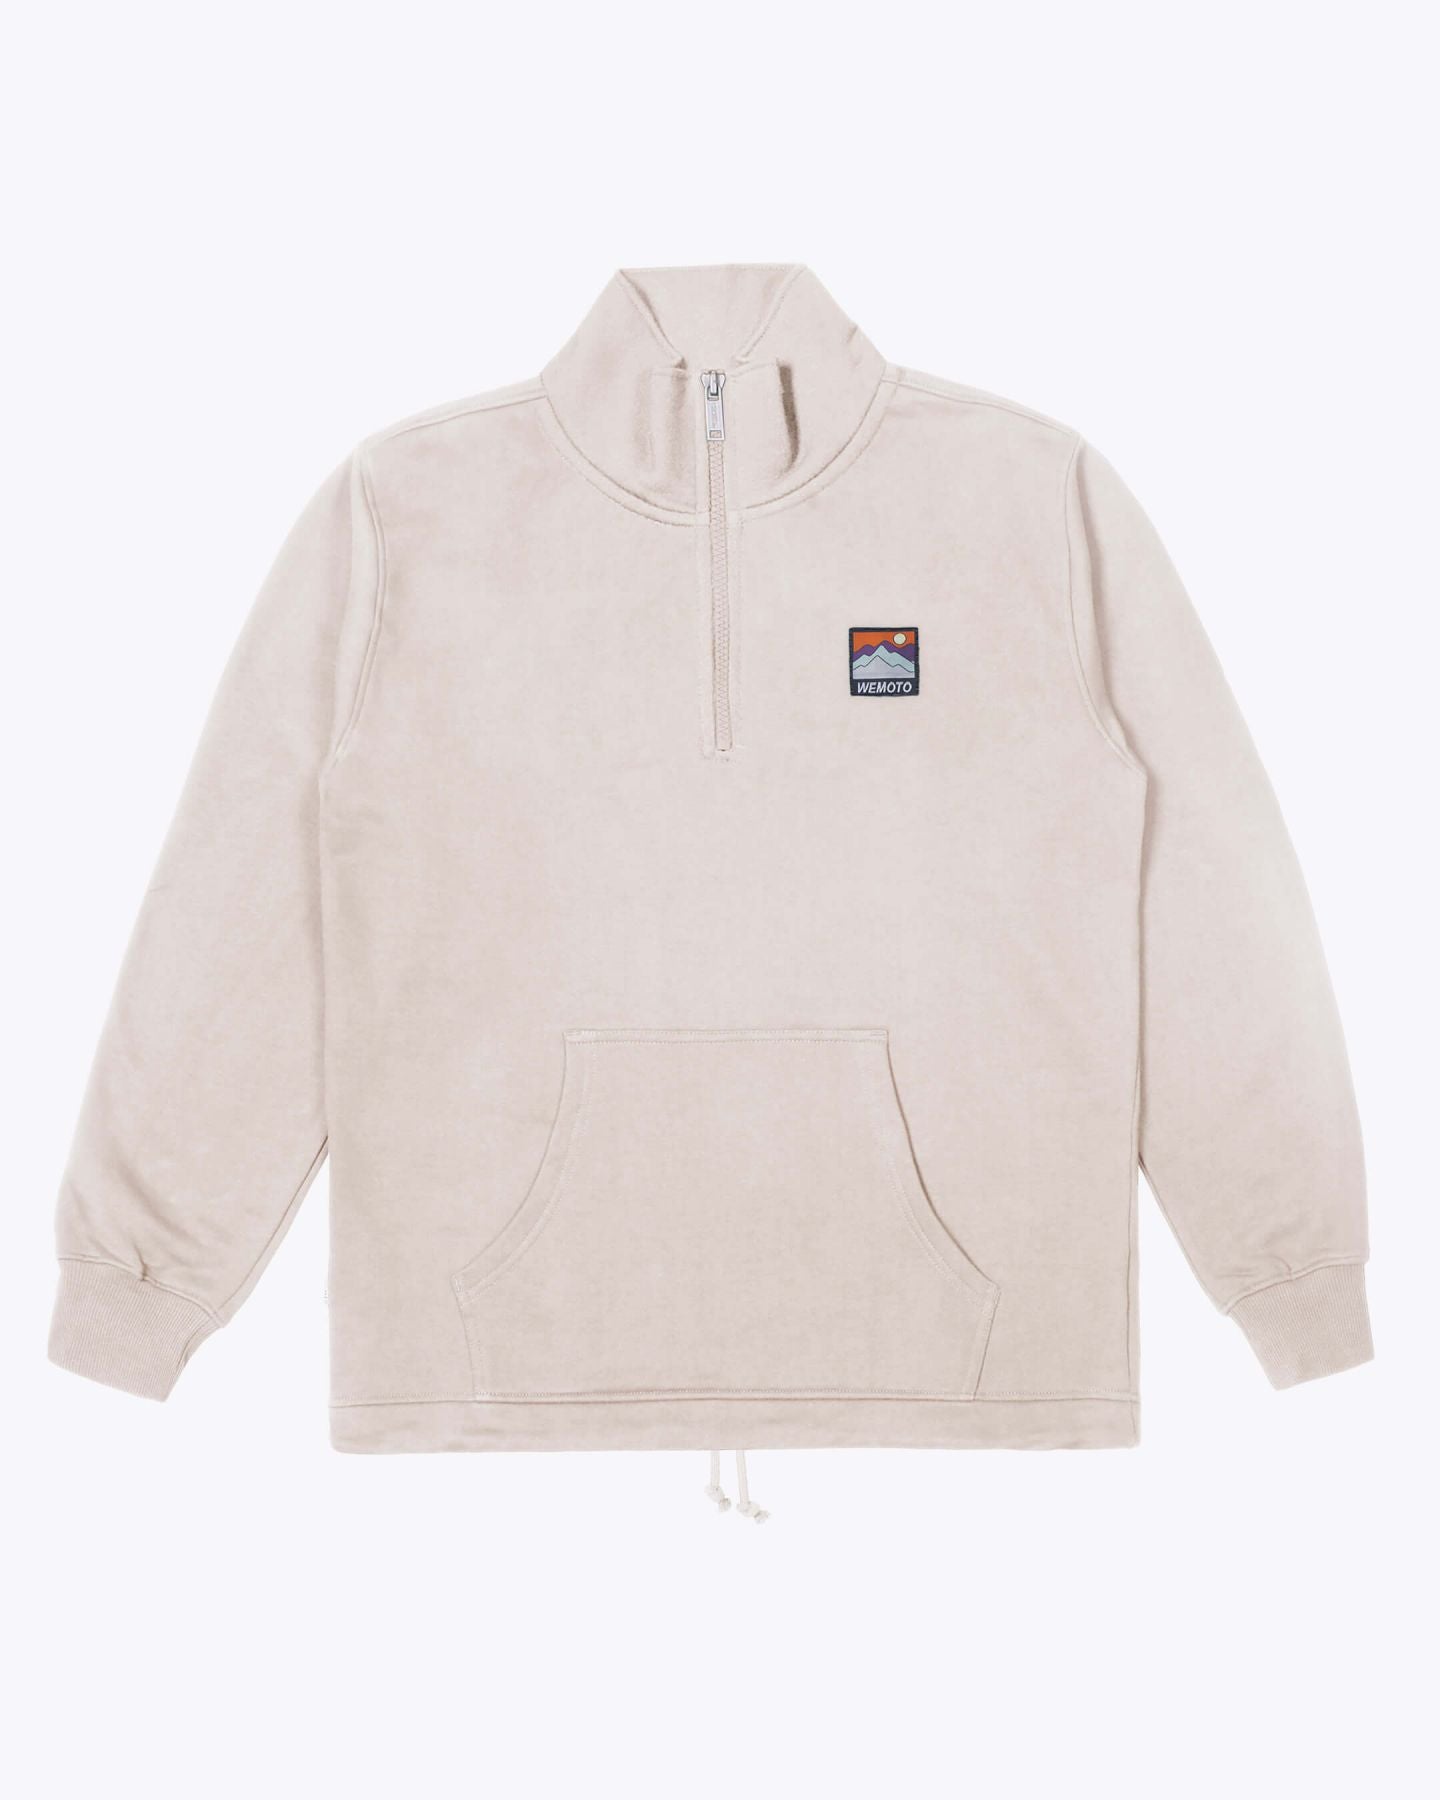 
                  
                    Mountain Troyer Half Zip Sweatshirt / Natural
                  
                